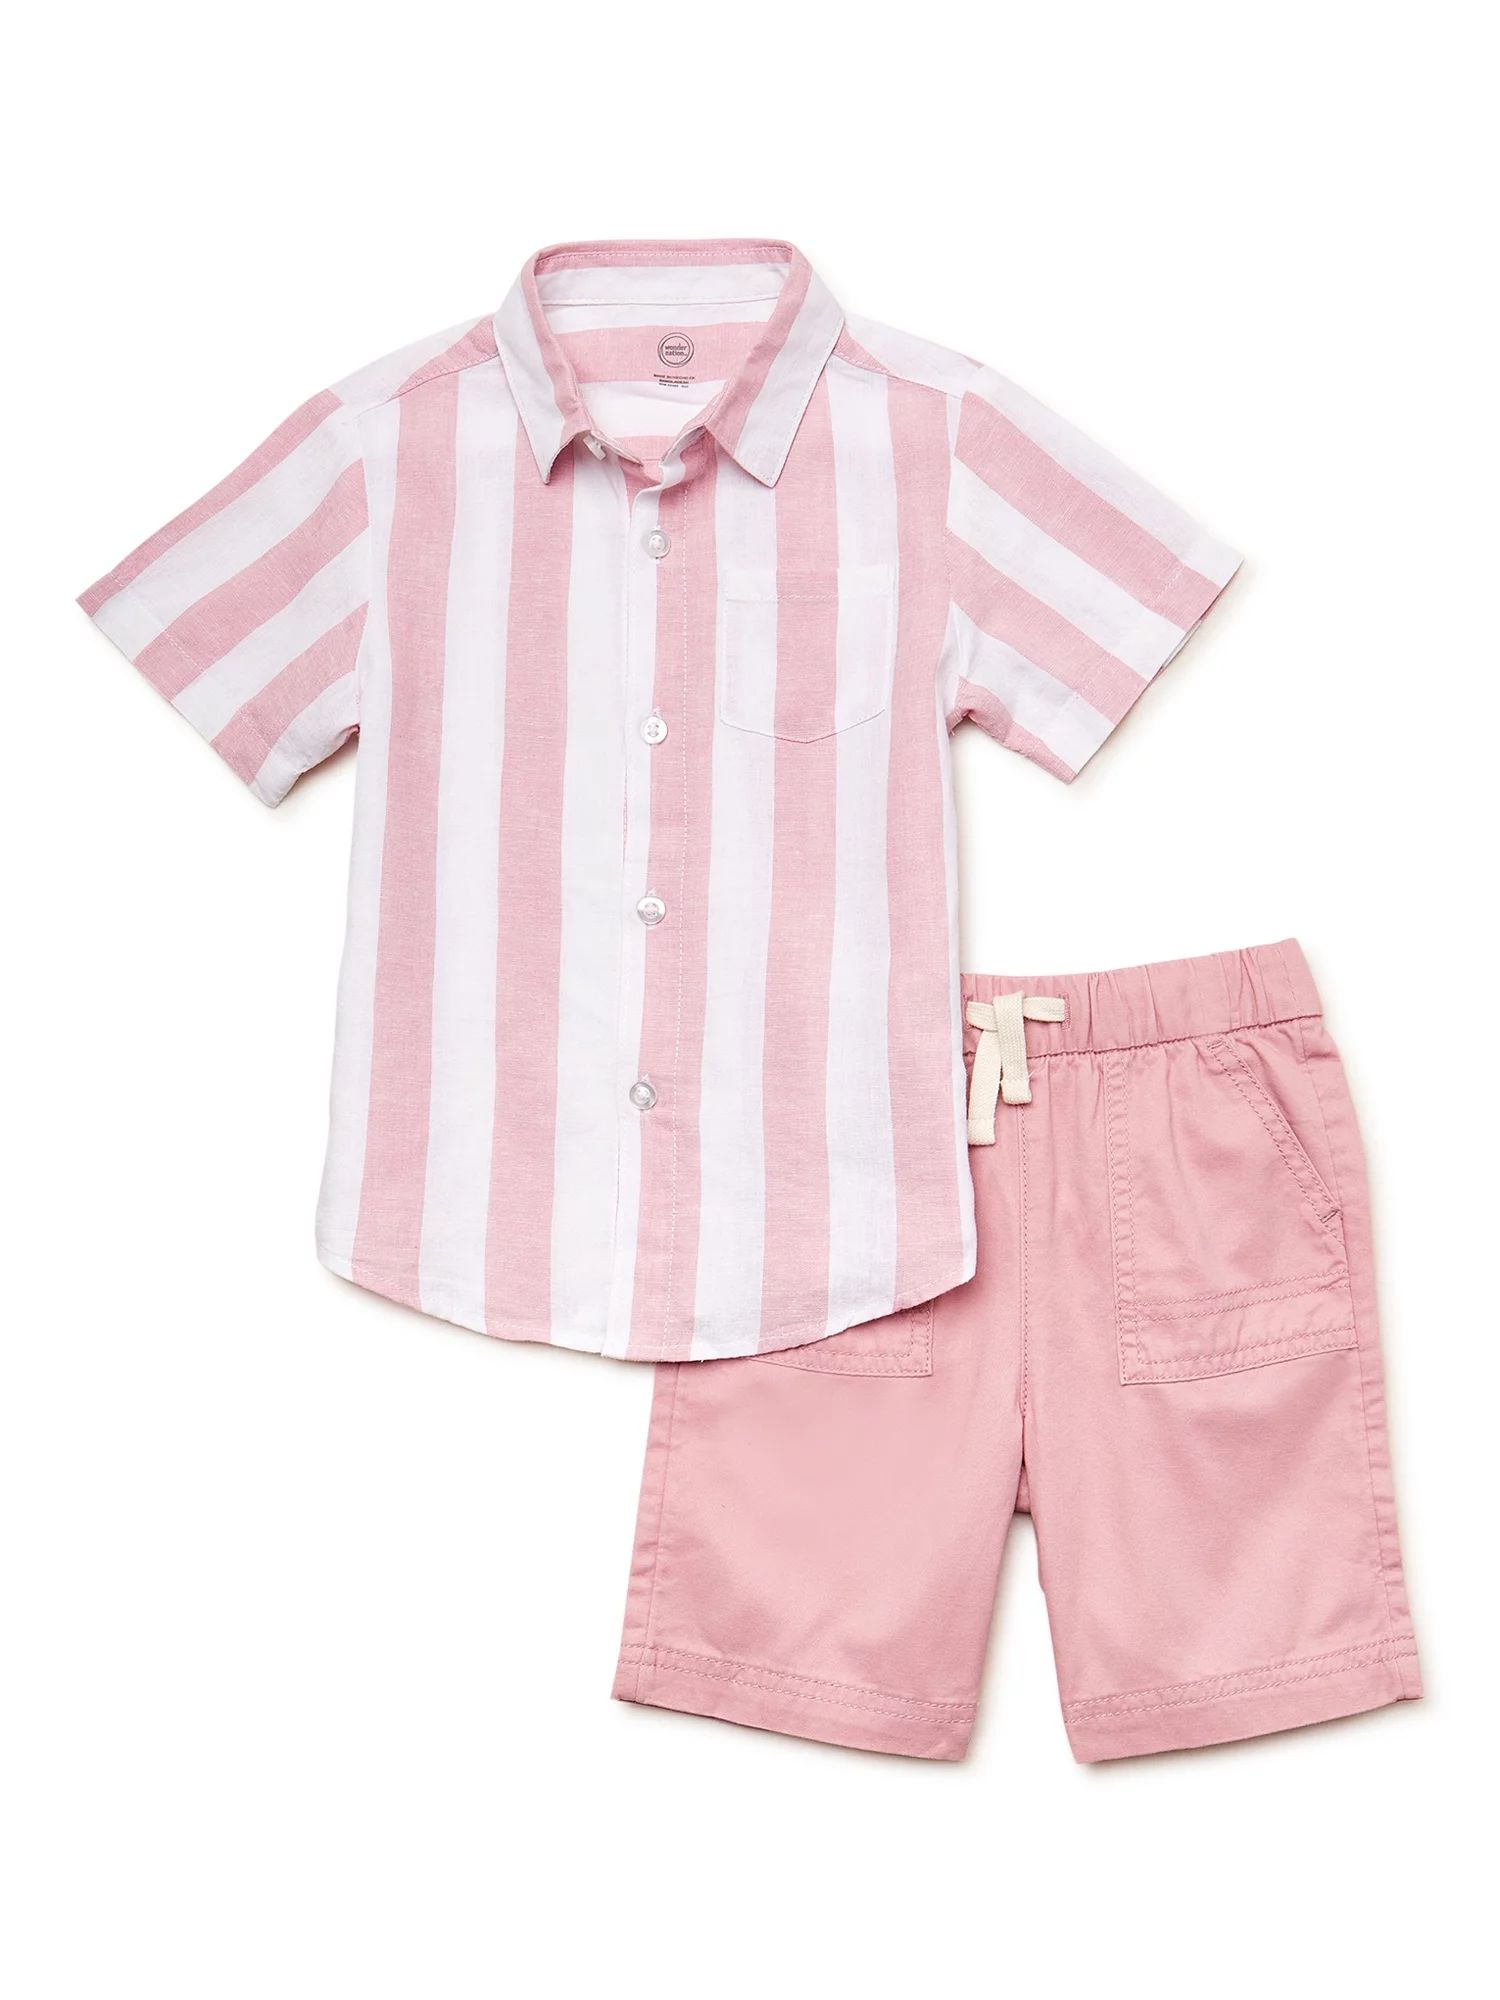 Wonder Nation Toddler Boy's Short Sleeve Set, 2 Piece, Sizes 12 Months - 5T | Walmart (US)